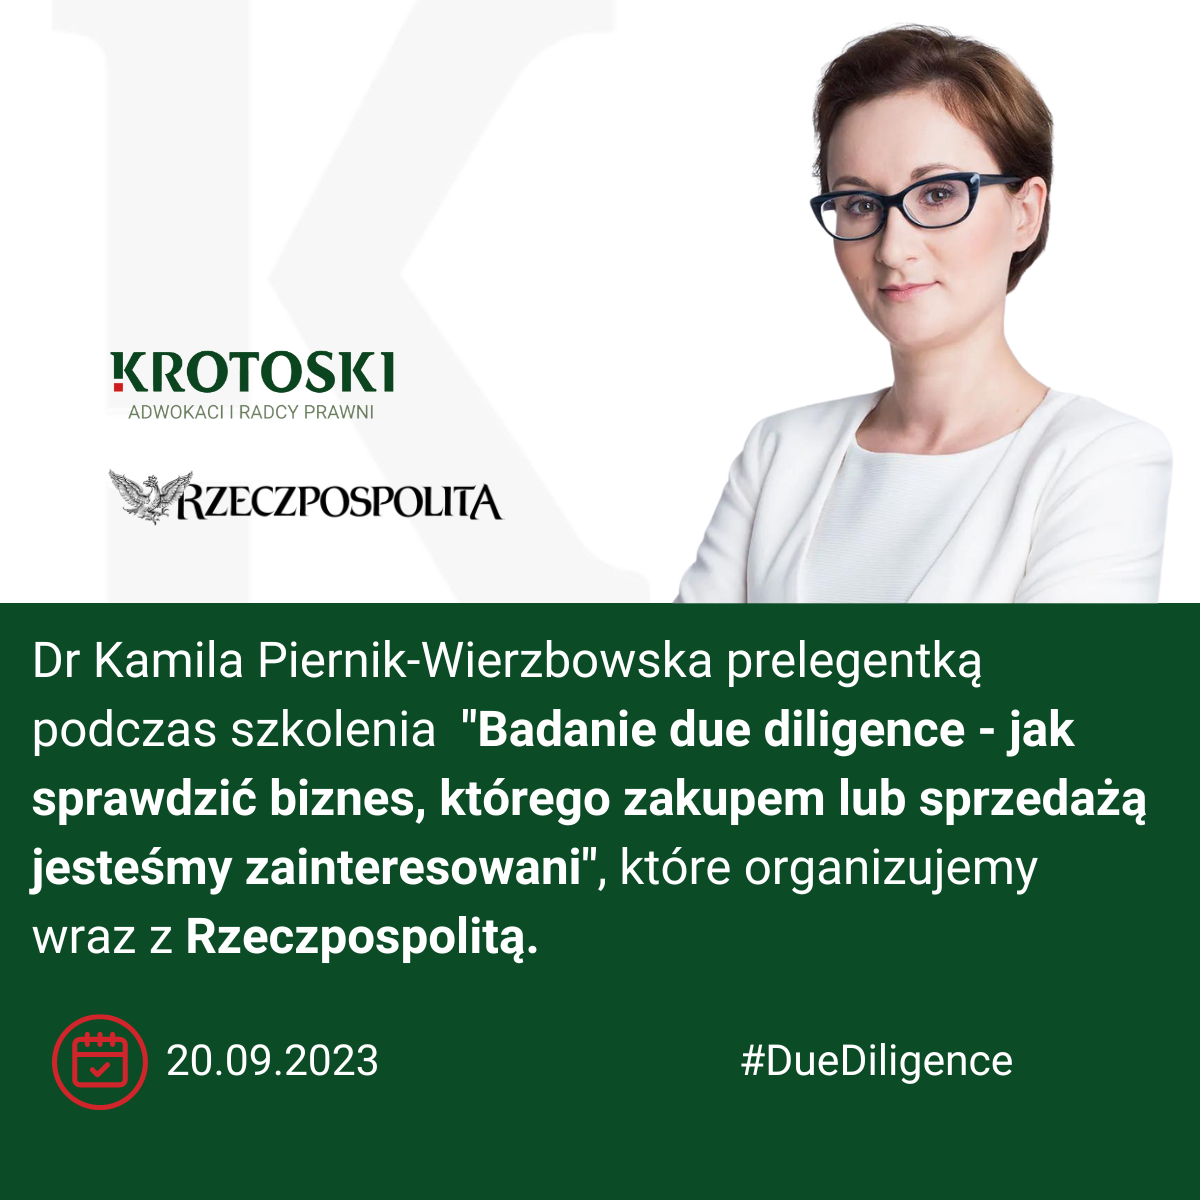 Dr Kamila Piernik-Wierzbowska prelegentką podczas szkolenia organizowanego z Rzeczpospolitą